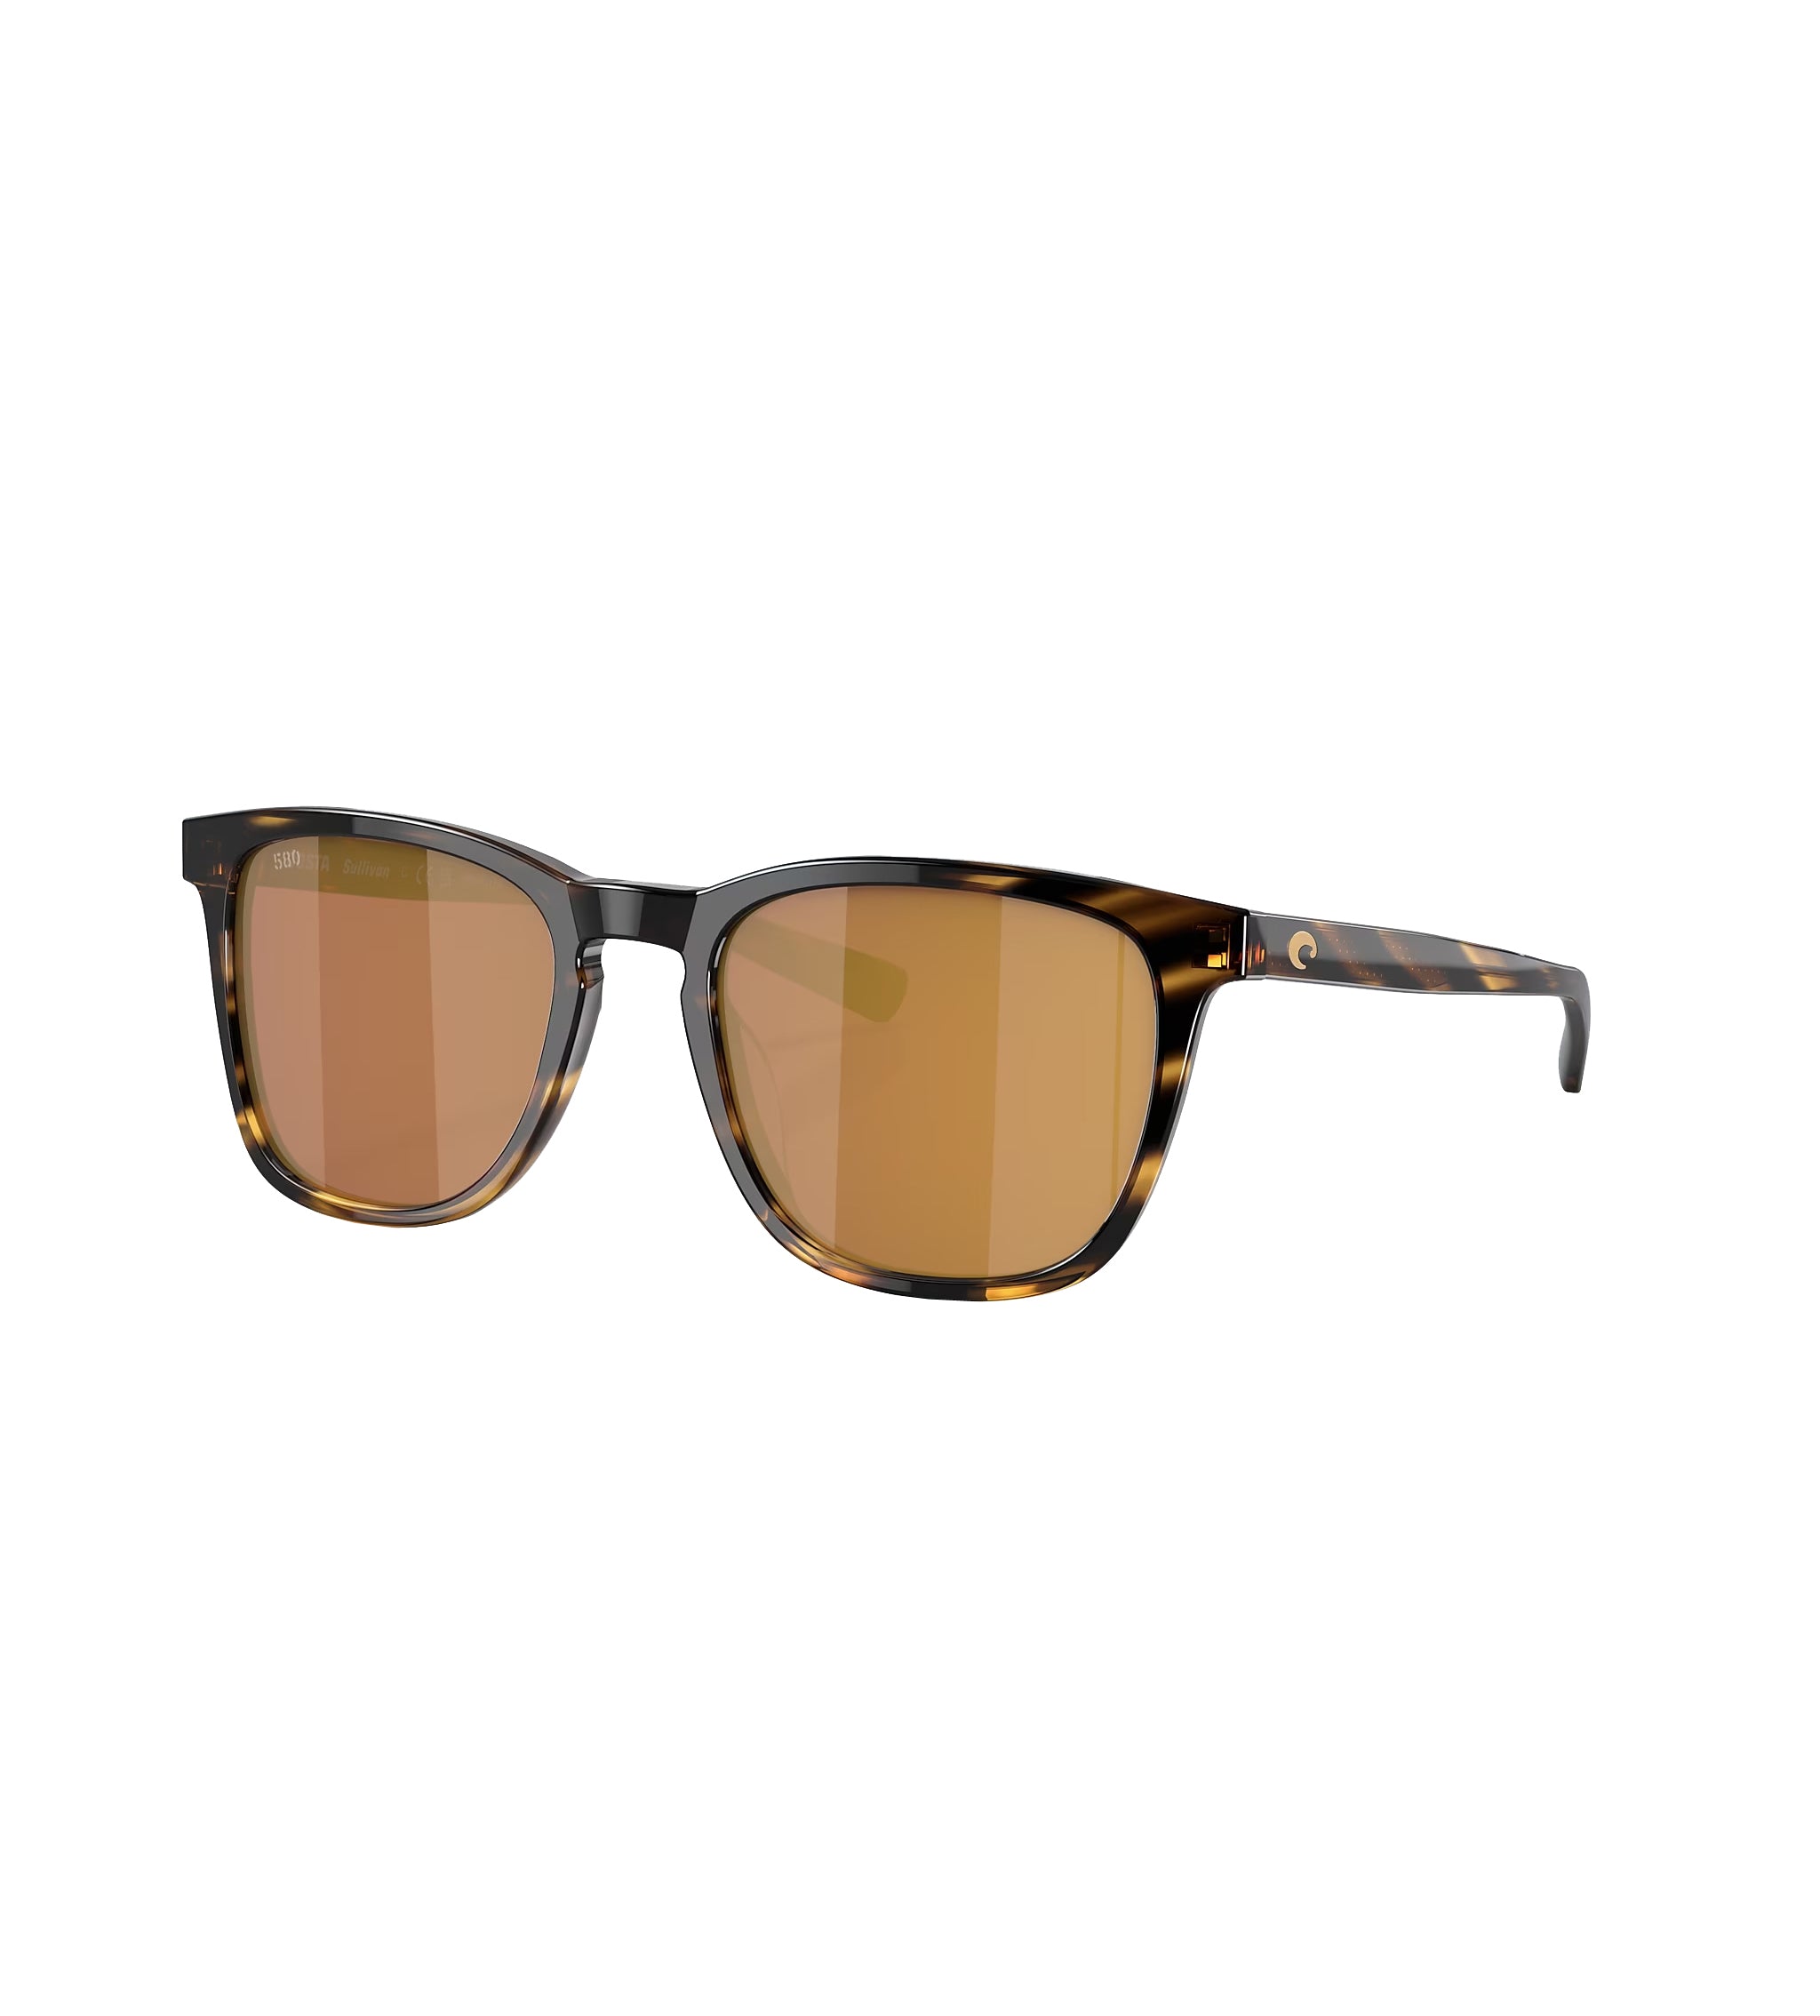 Costa Del Mar Sullivan Polarized Sunglasses Tortoise Gold Mirror 580G